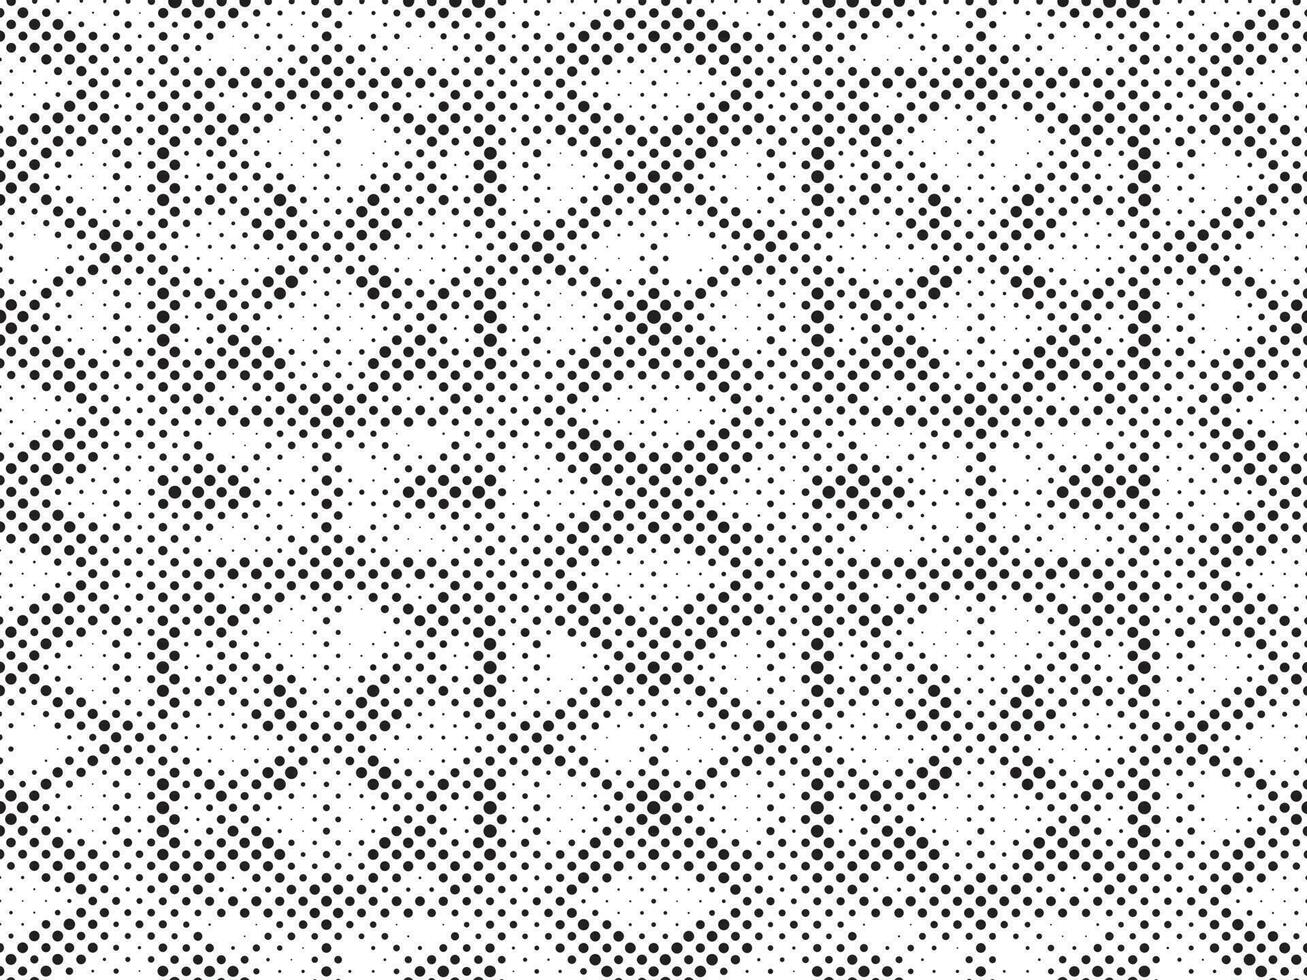 noir et blanc demi-teinte grille. moderne minimaliste géométrique modèle vecteur